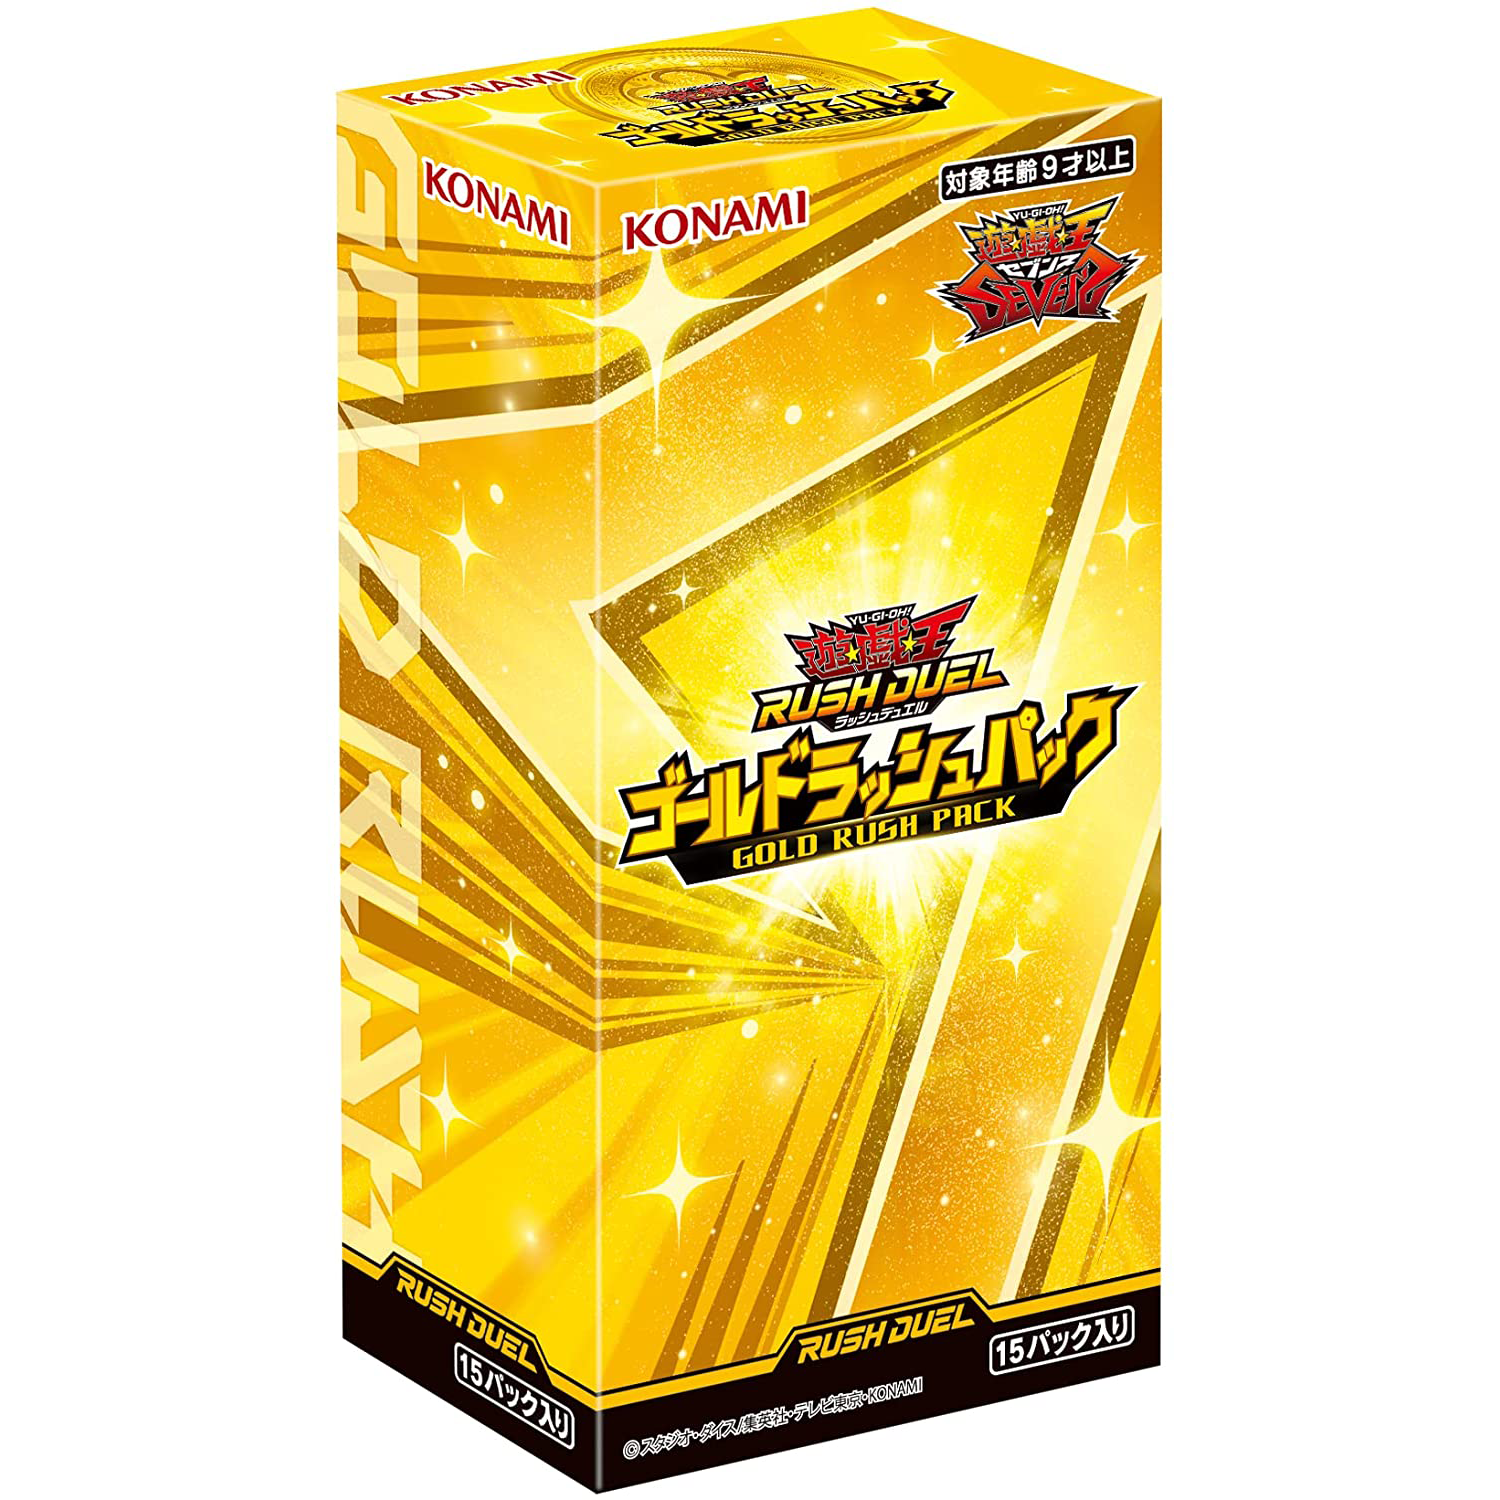 Yu-Gi-Oh! RUSH DUEL ｢GOLD RUSH PACK｣ Box